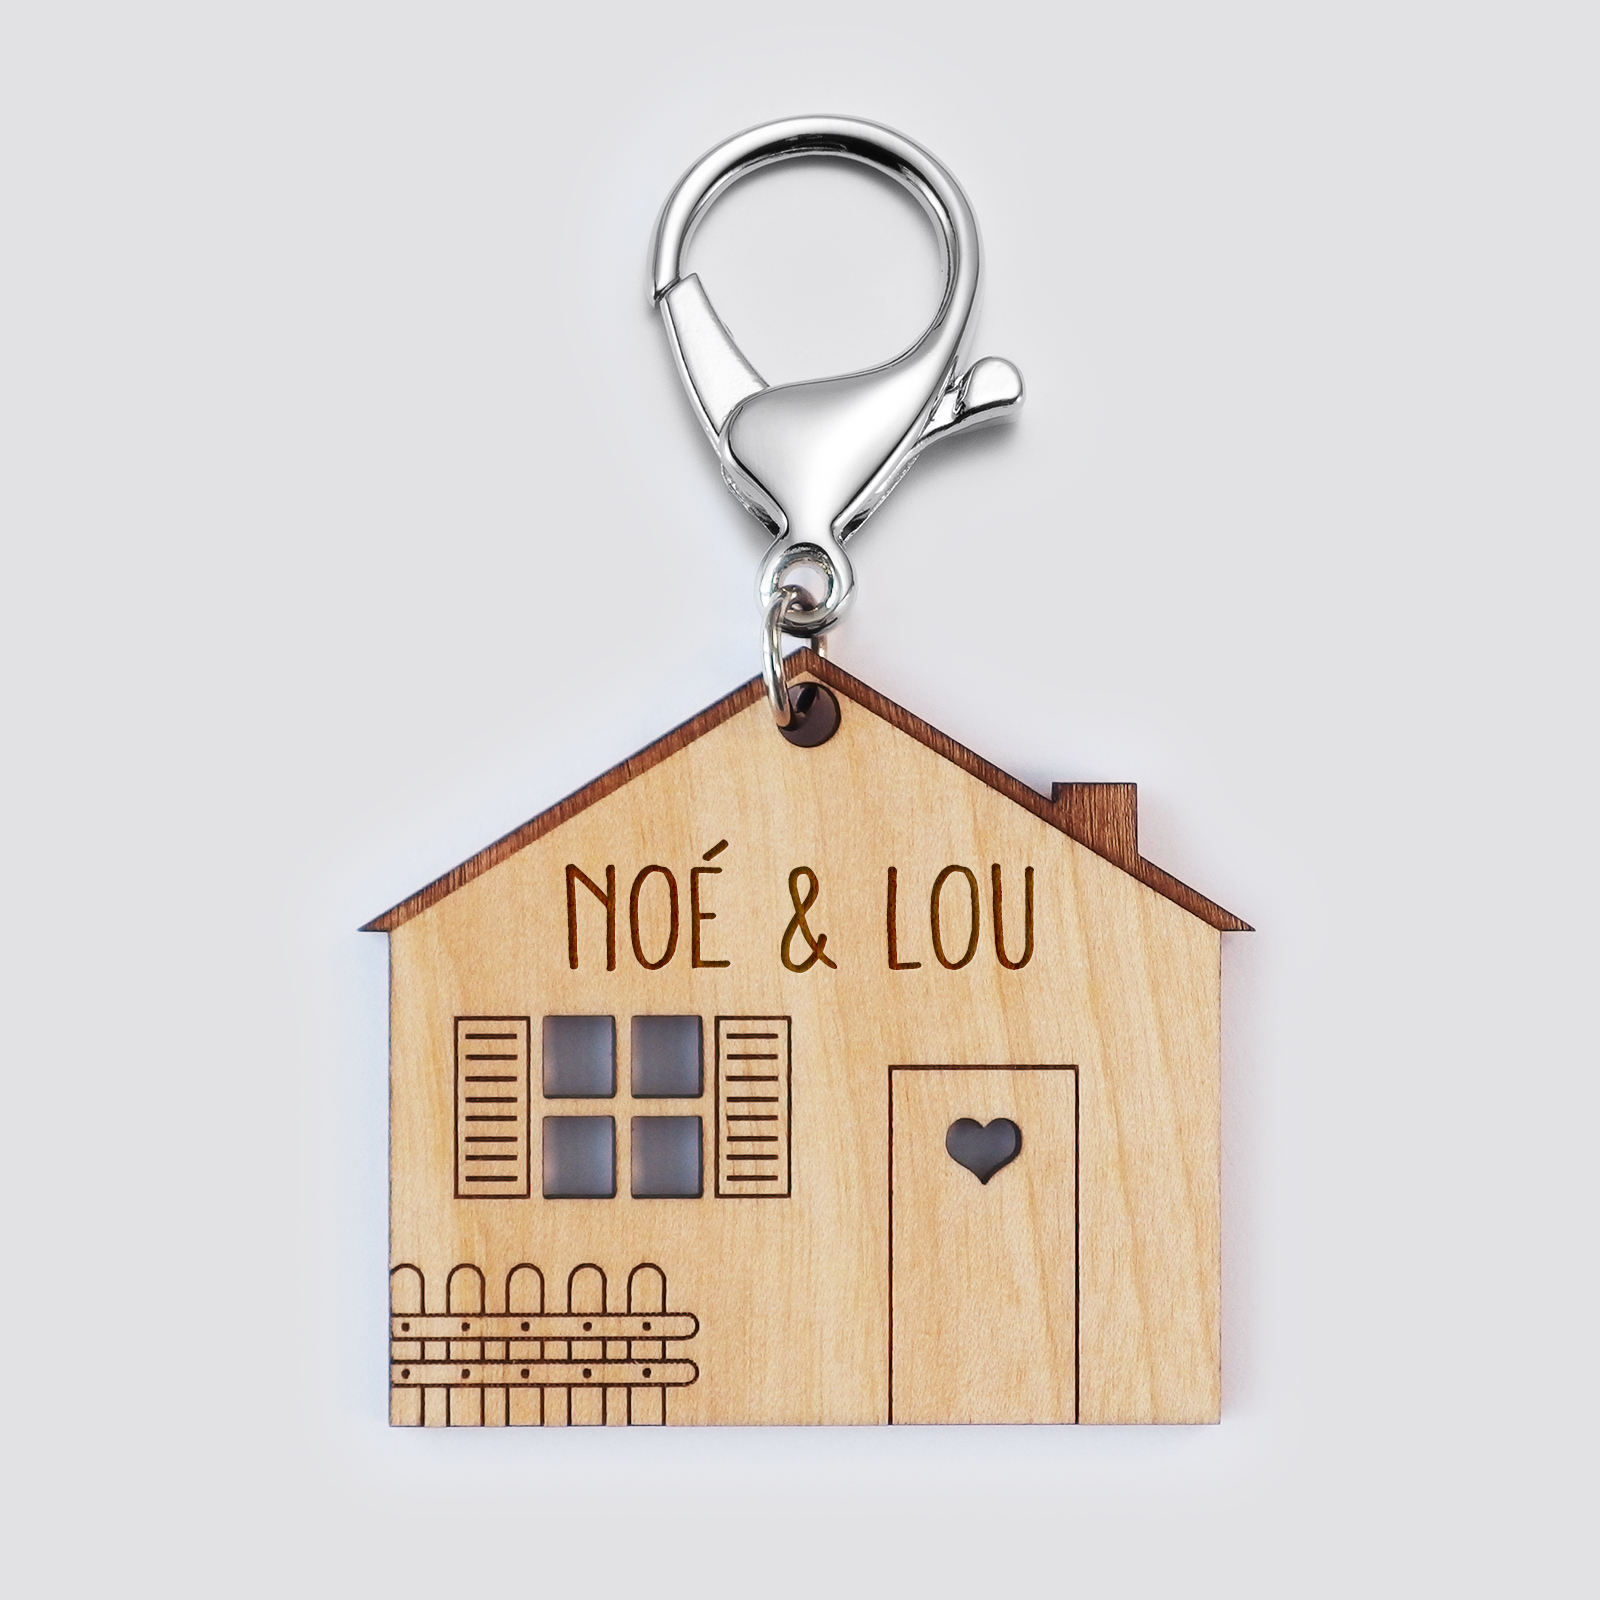 Porte-clés personnalisé médaille gravée bois Maison Home Sweet Home